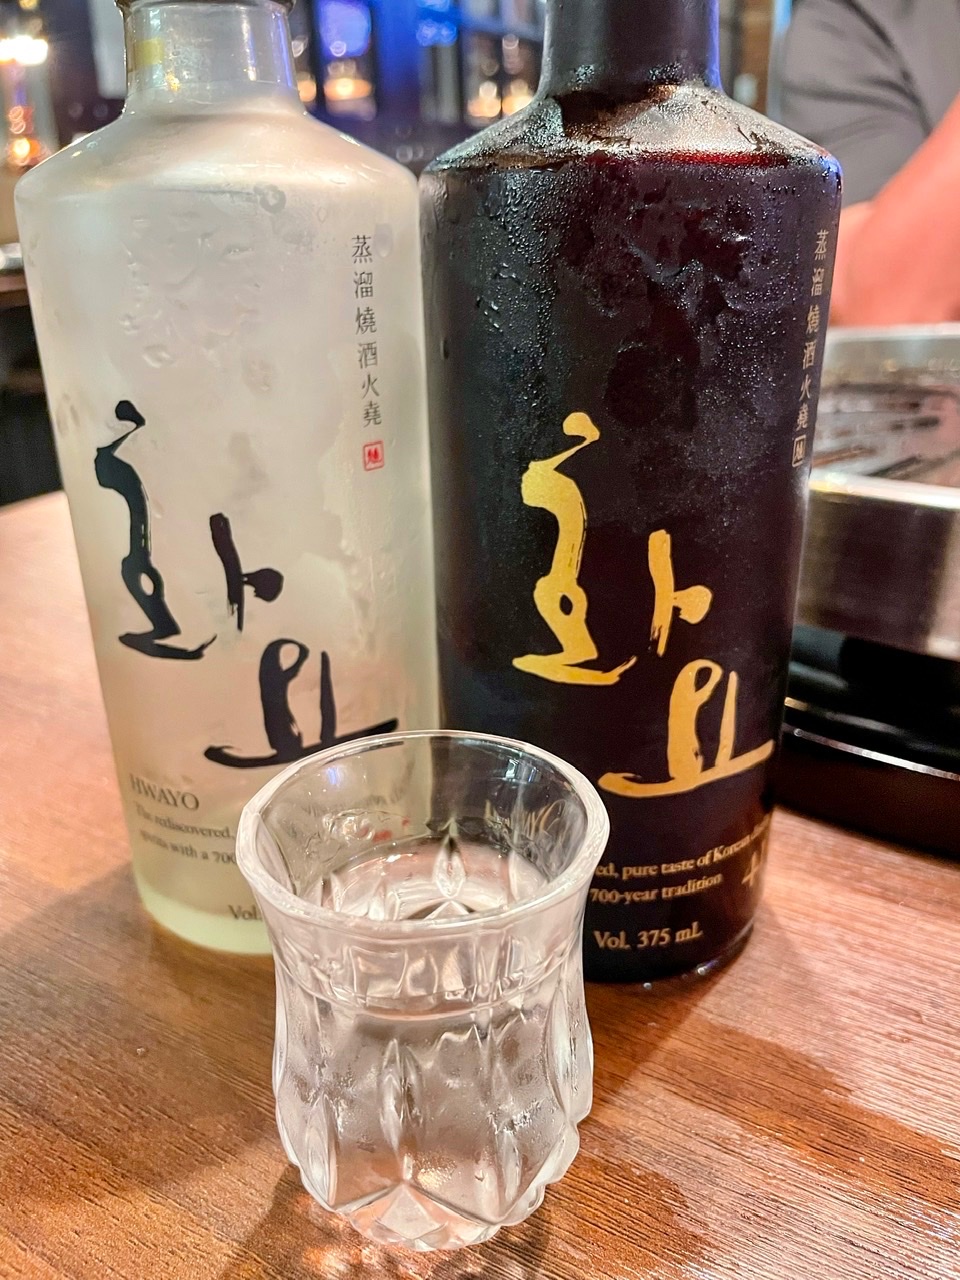 High End” Soju (Korea): Hwayo 25 & 41. - Beer and Spirits - WineBerserkers